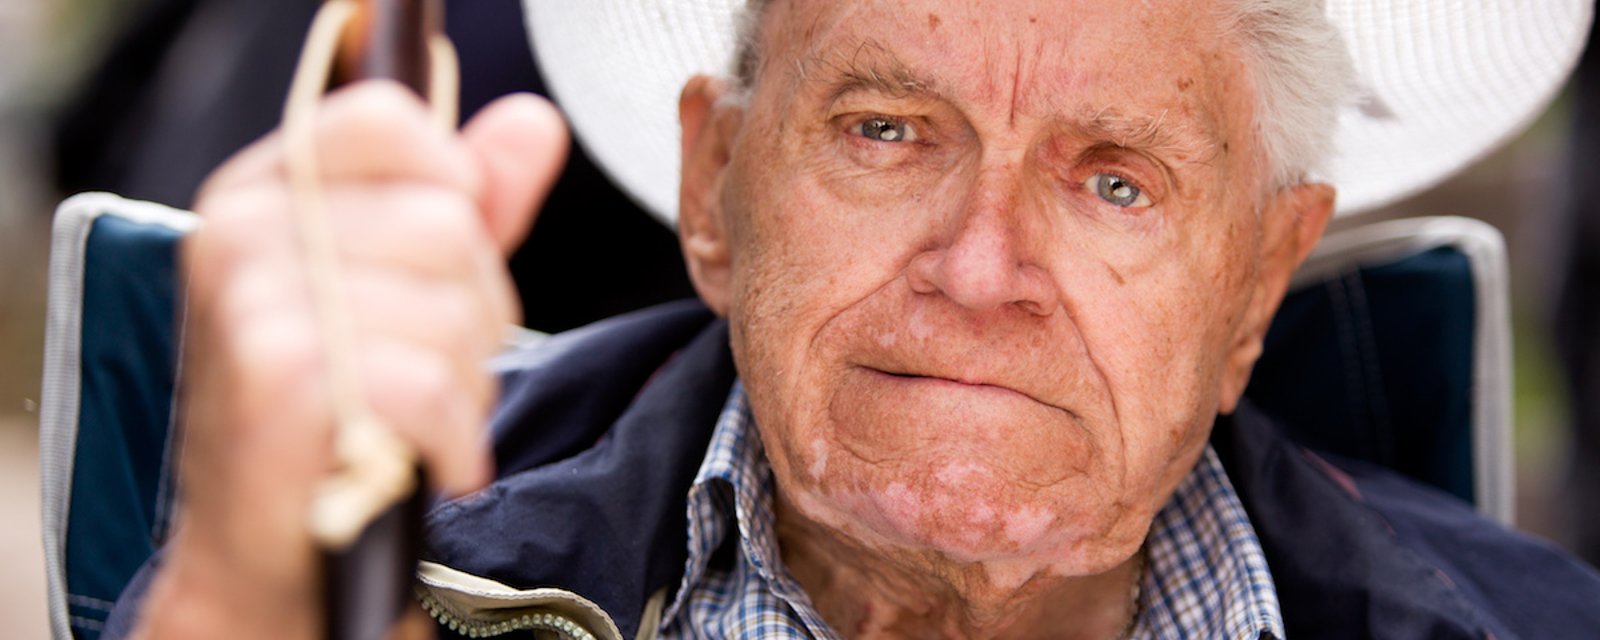 La science révèle que plus on vieillit, moins on aime les gens!